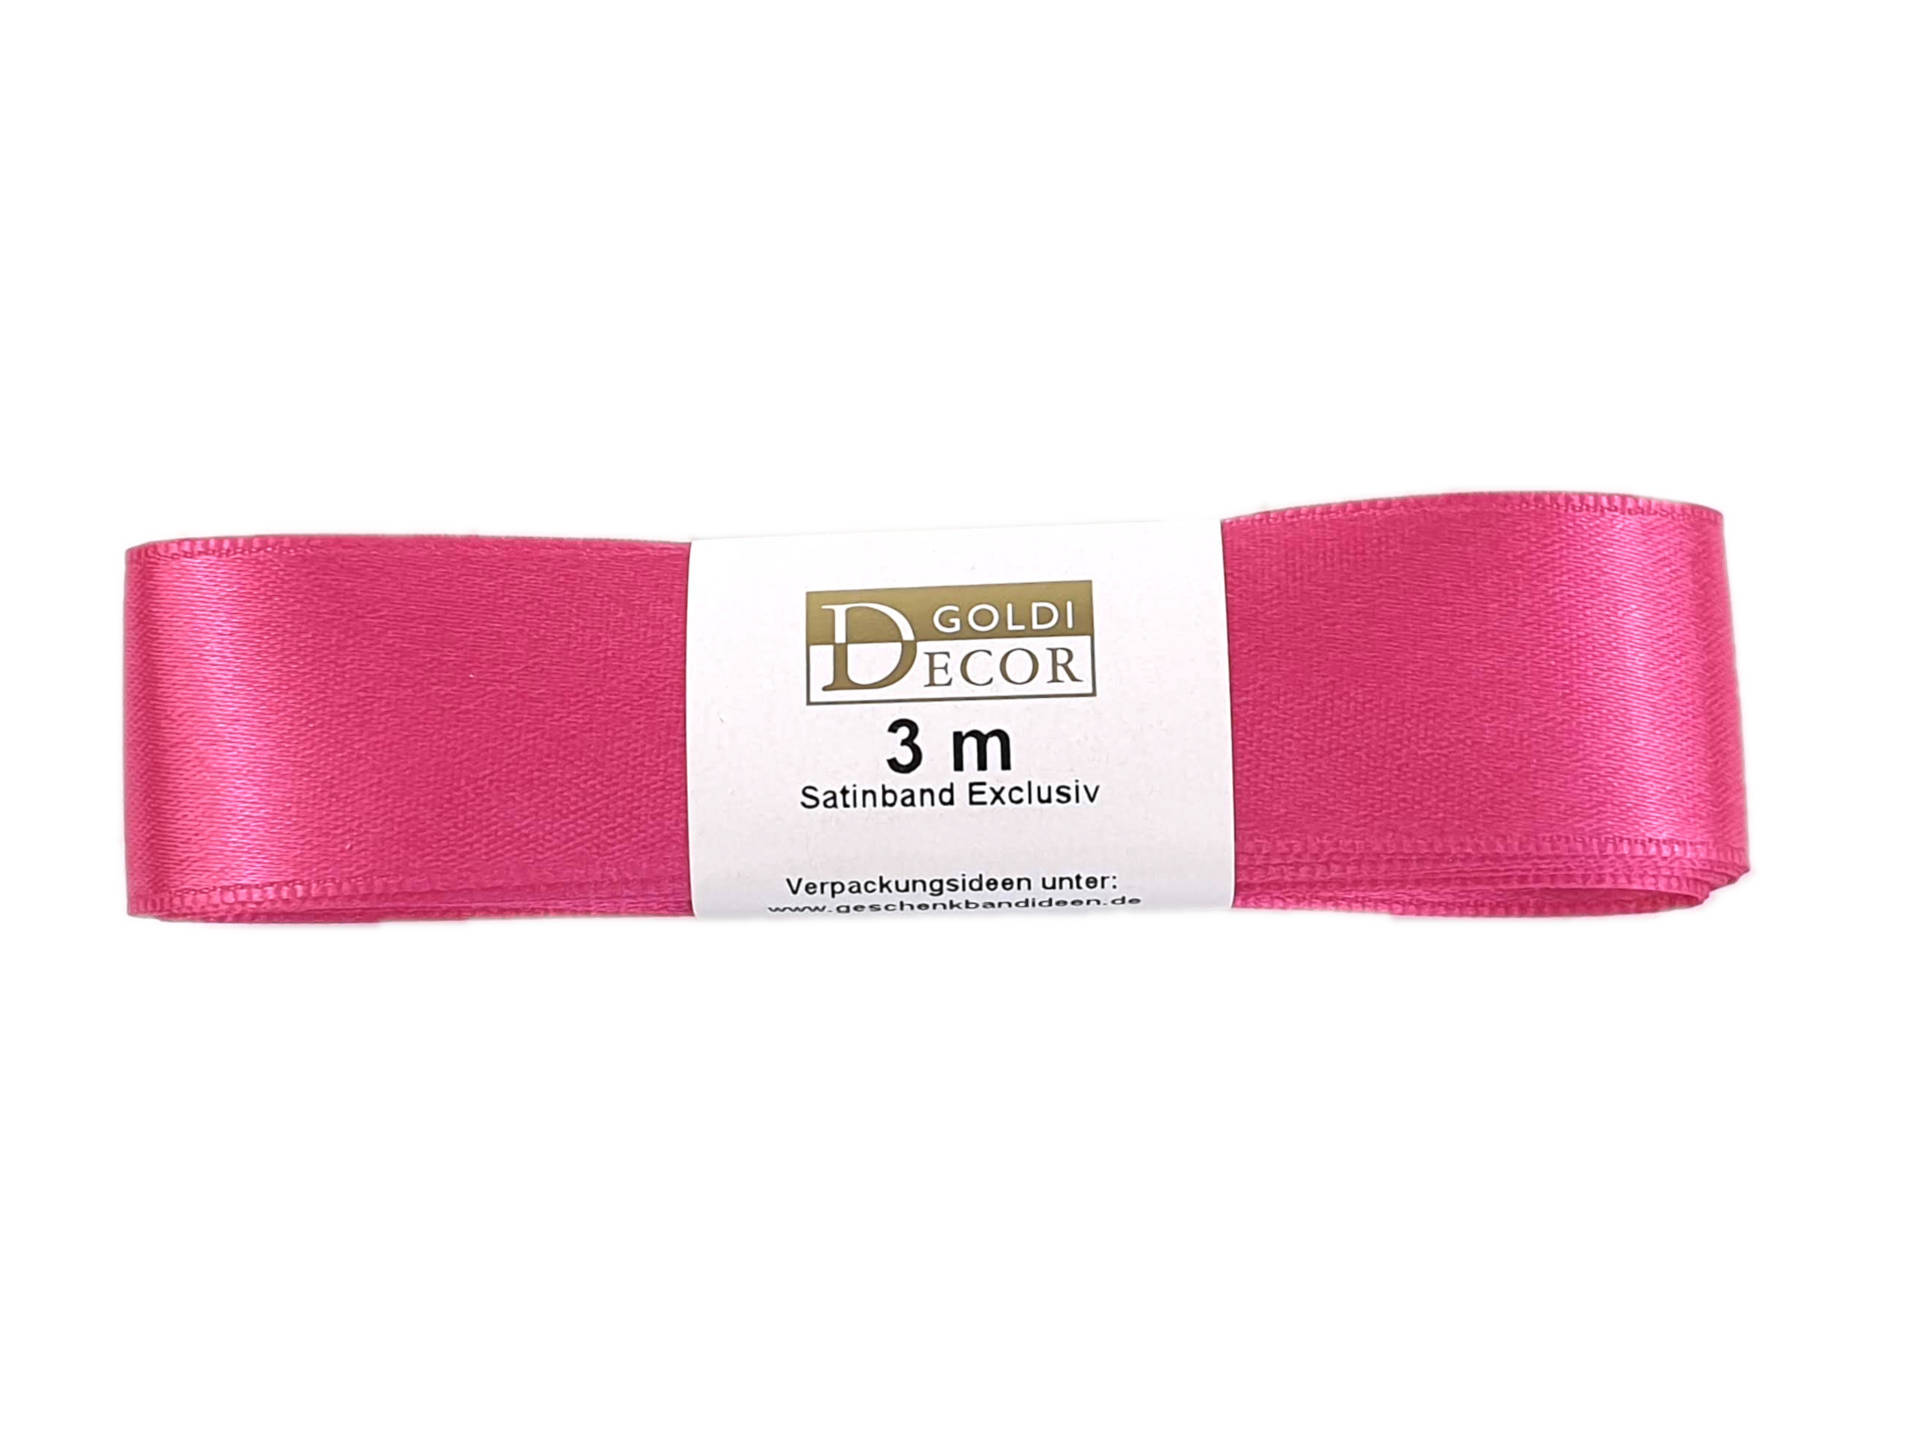 Premium-Satinband, pink, 25 mm breit, 3 m Strängchen - satinband, premium-qualitat, dauersortiment